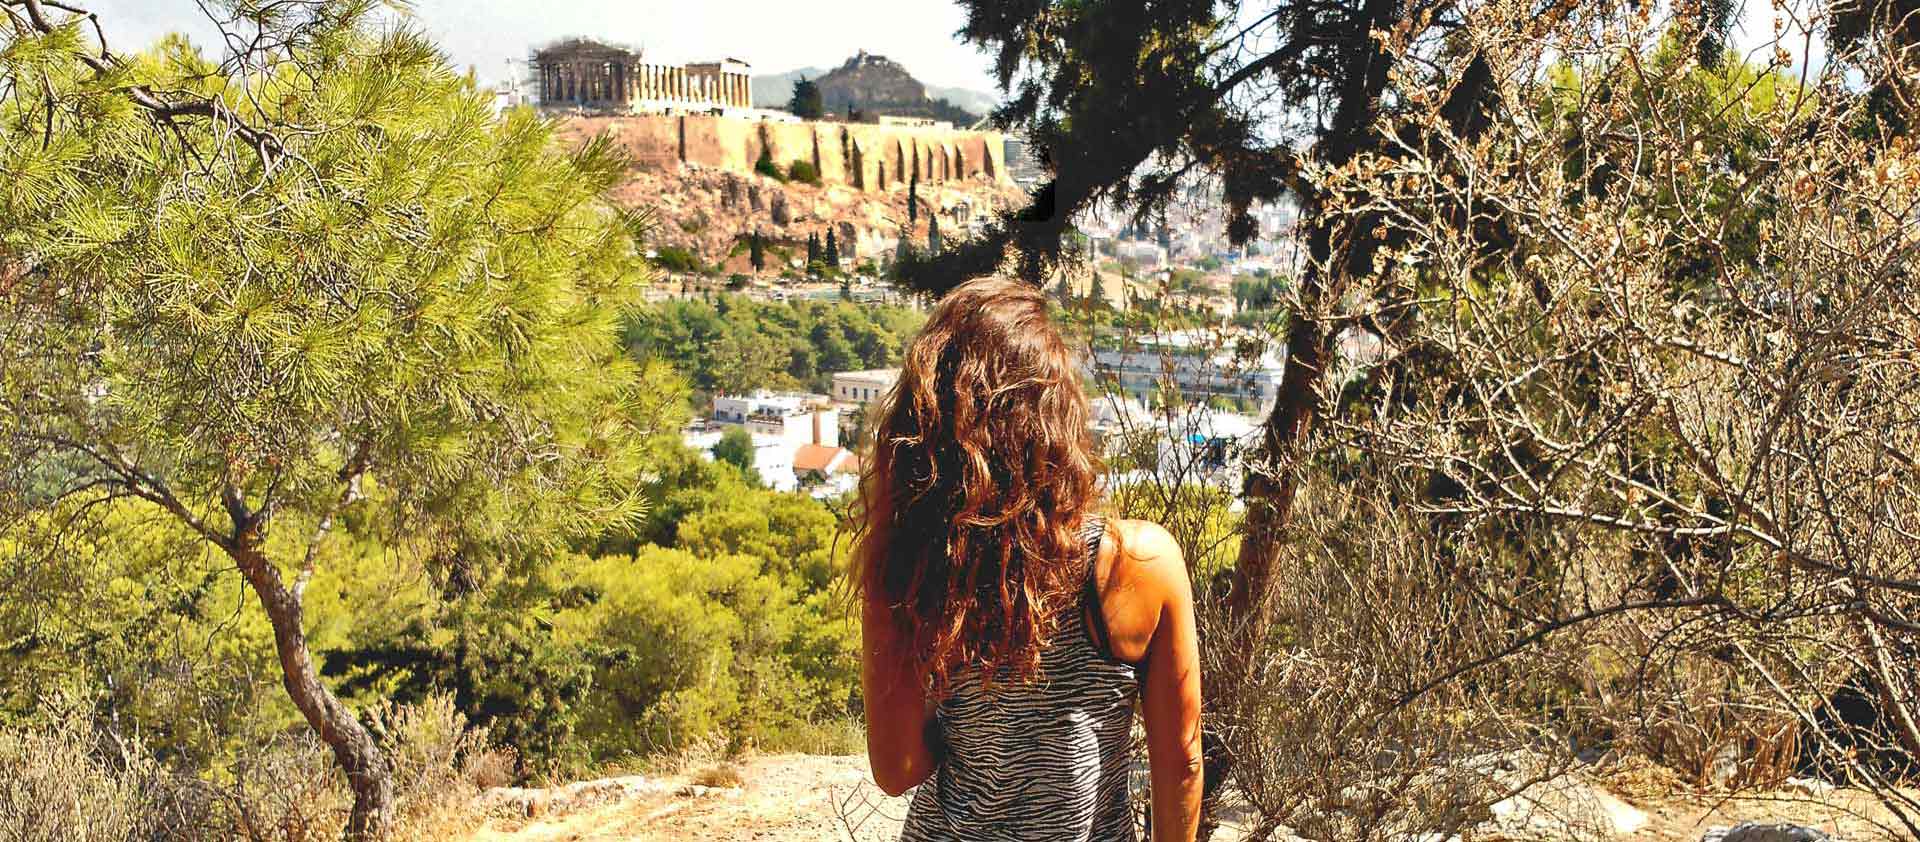 Datos prácticos y actualizados para preparar la visita perfecta a la Acrópolis de Atenas